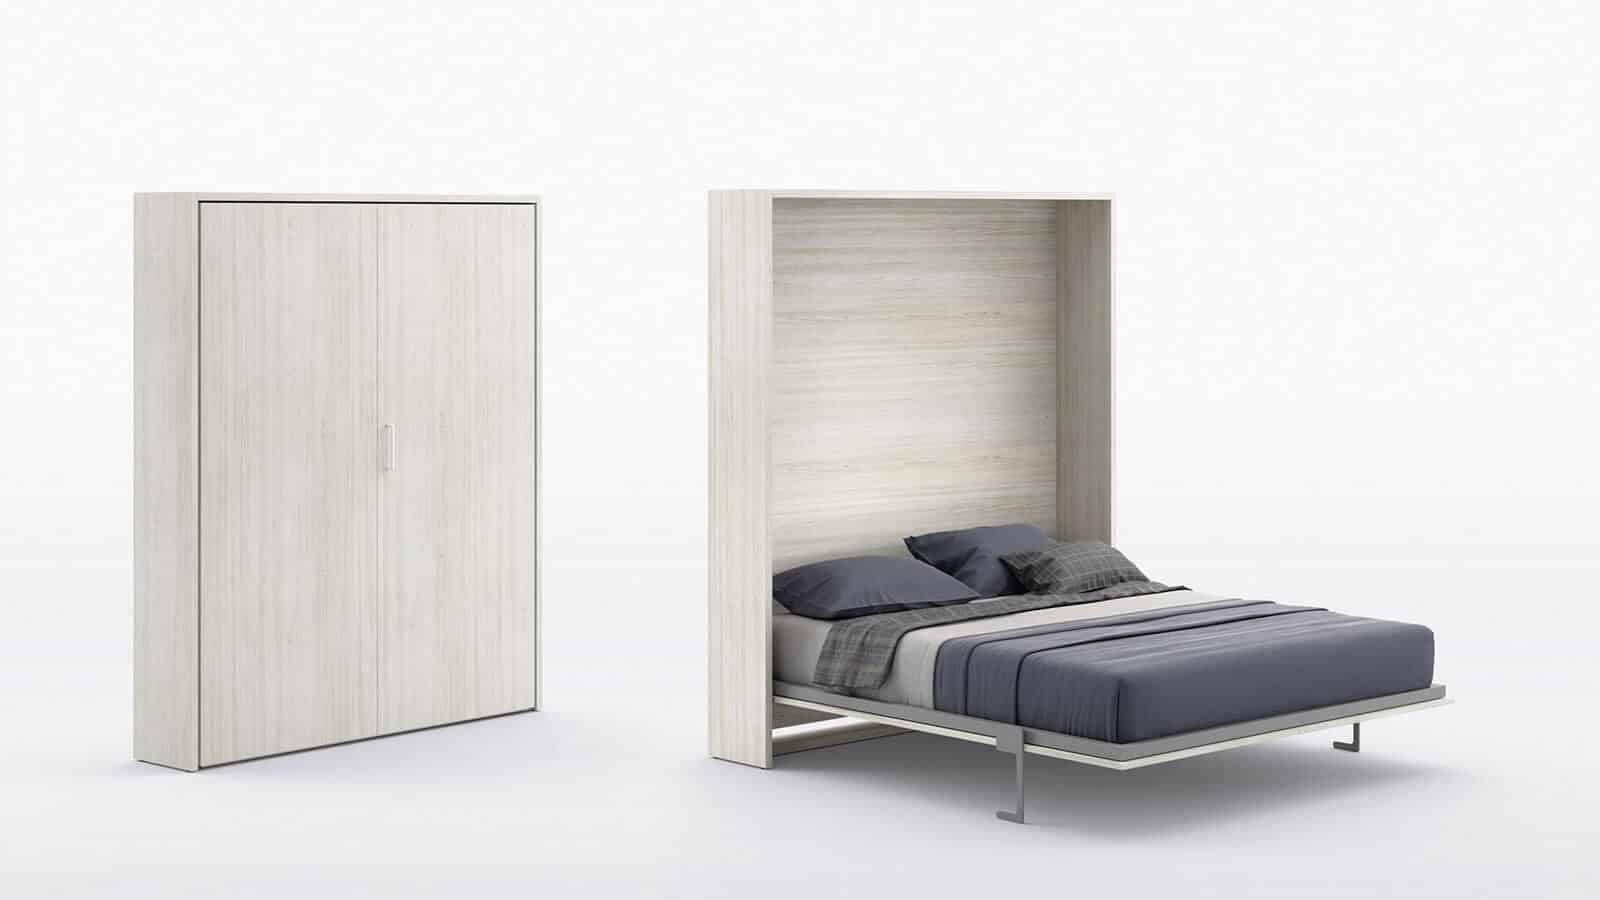 Lit escamotable horizontal optimal avec armoire sur meuble